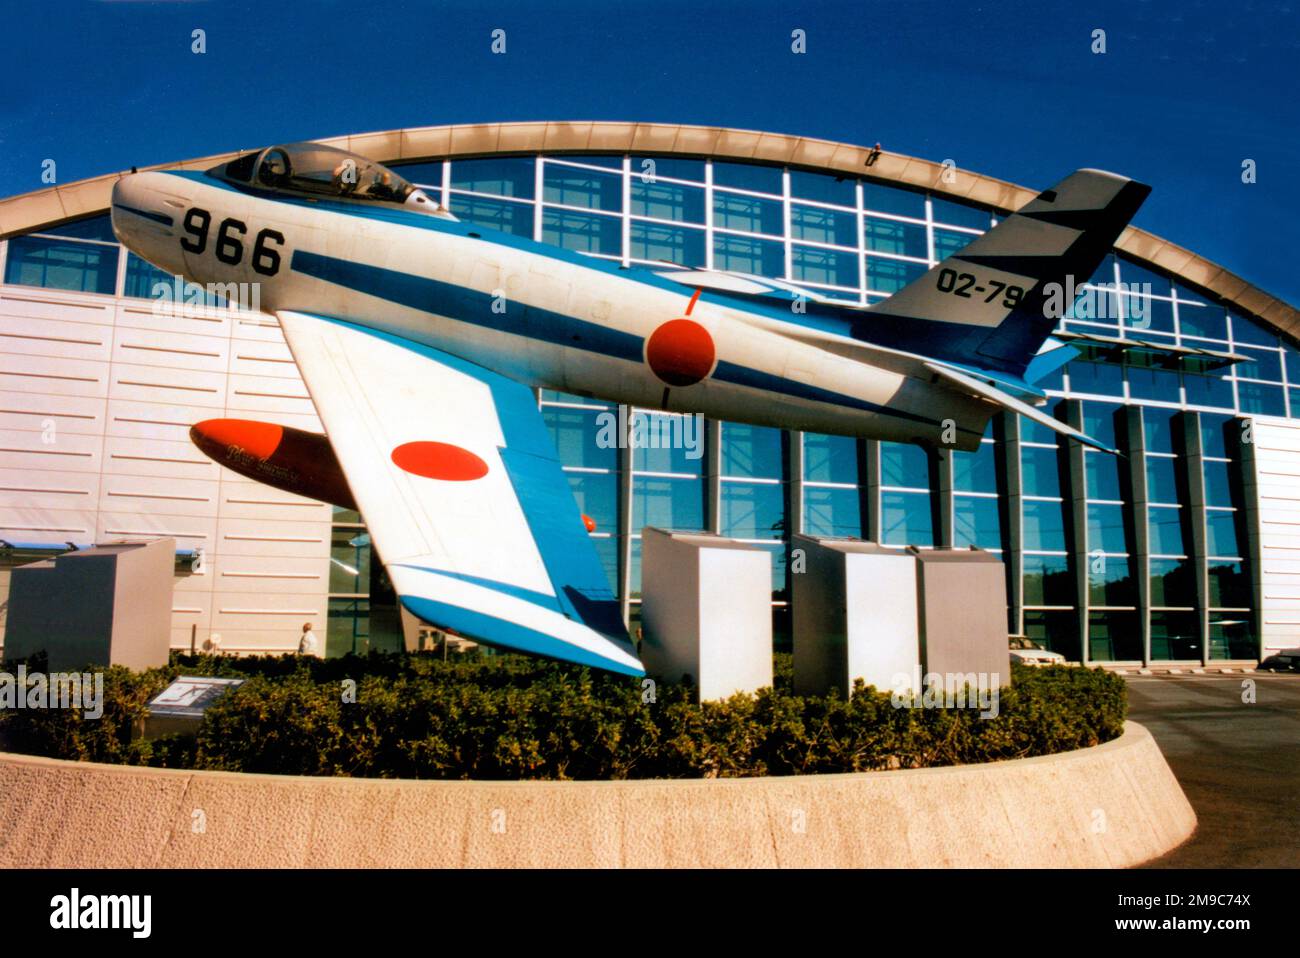 Amérique du Nord F-86F Sabre 02-7966 (msn 256-86), anciennement de l'équipe aérobie Blue Impulse, monté sur un pylône à l'extérieur du parc aérien et musée JASDF, base aérienne de Hamamatsu, préfecture de Shizuoka, au Japon. Banque D'Images